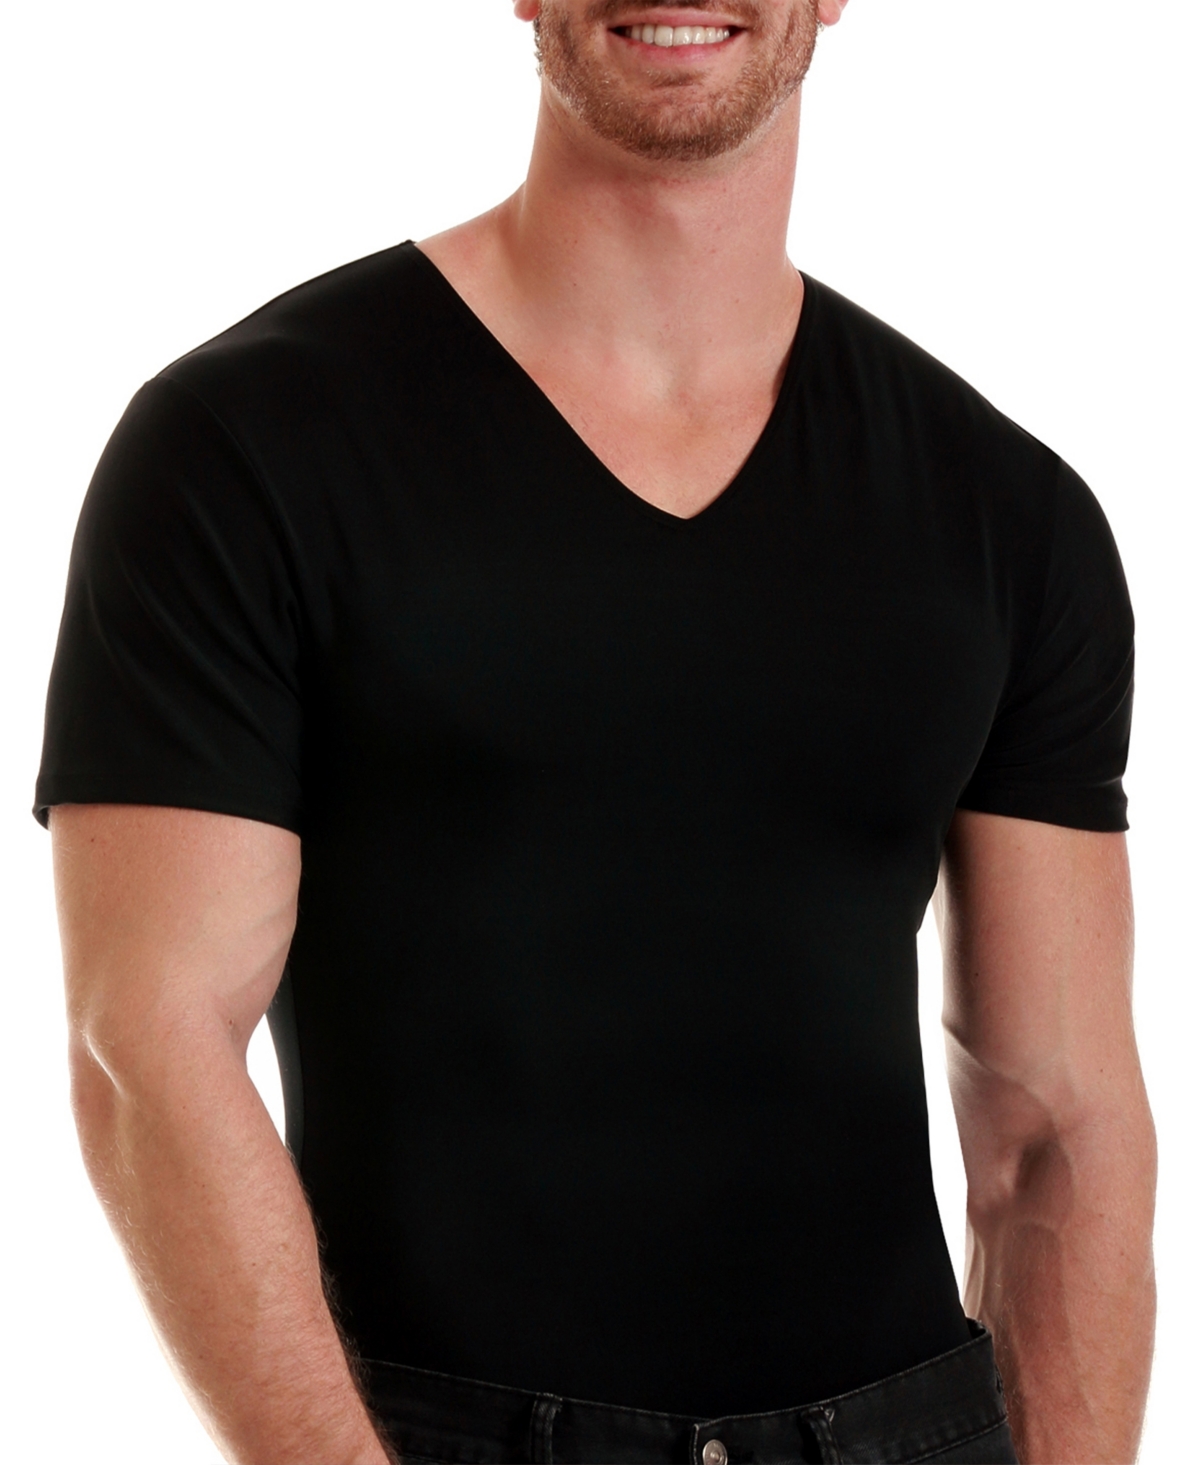 Men's Power Mesh Compression Short Sleeve V-Neck T-shirt - Black